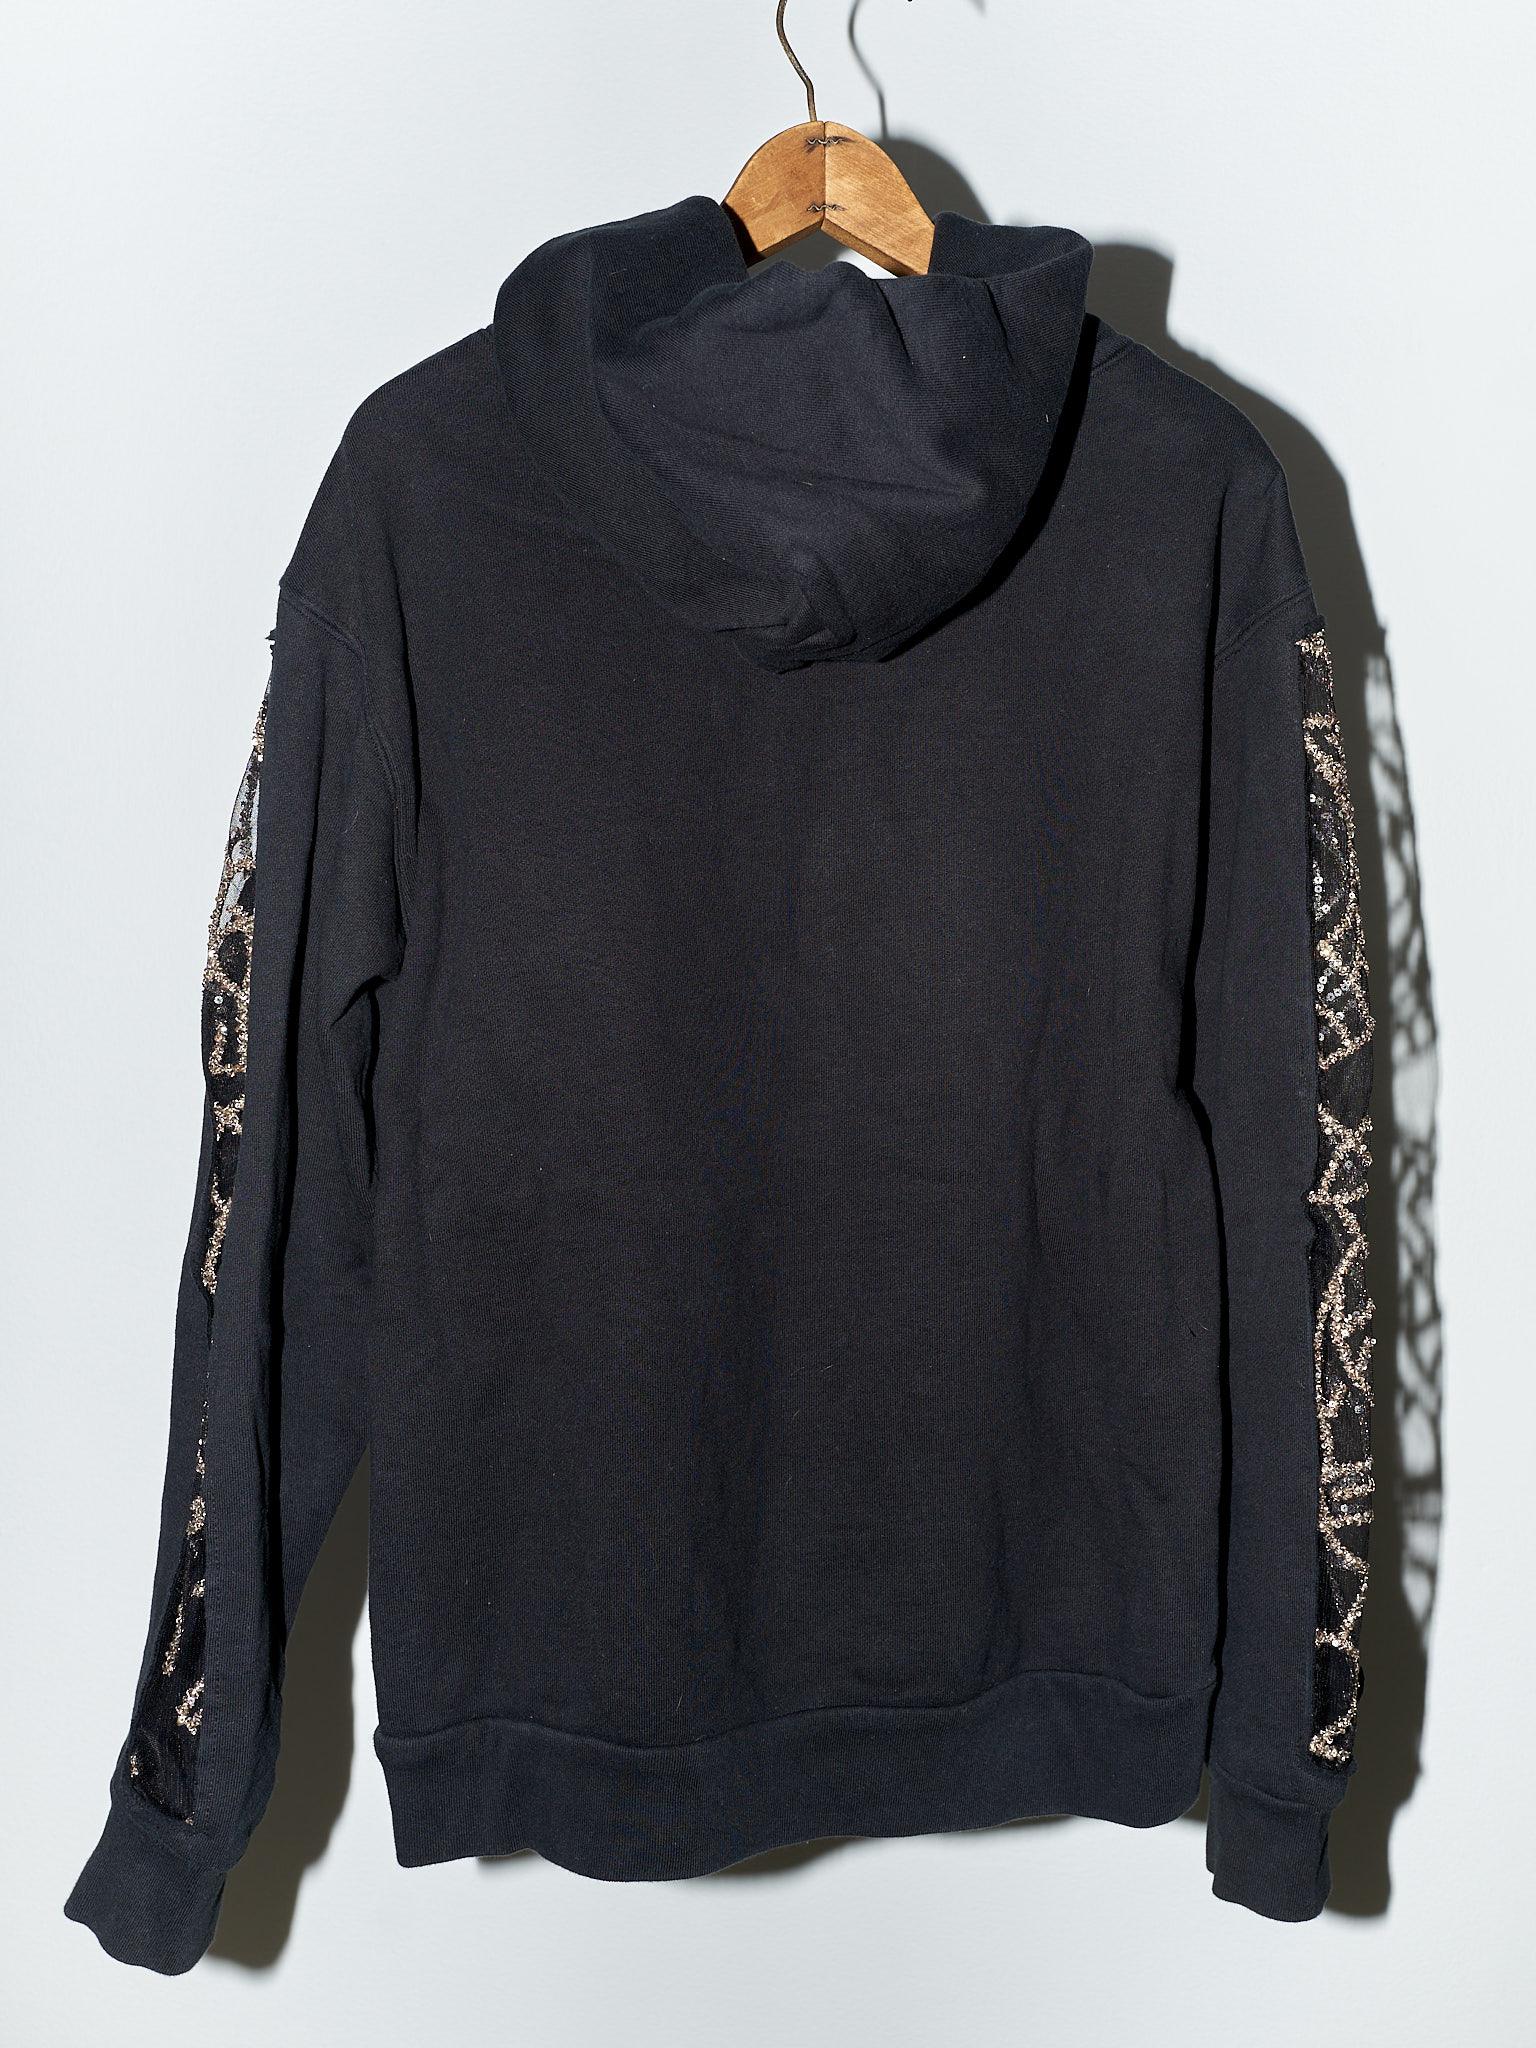 Black Hoodie Sweatshirt Transparent Sheer Mesh Chrystal Embroidery J Dauphin For Sale 6